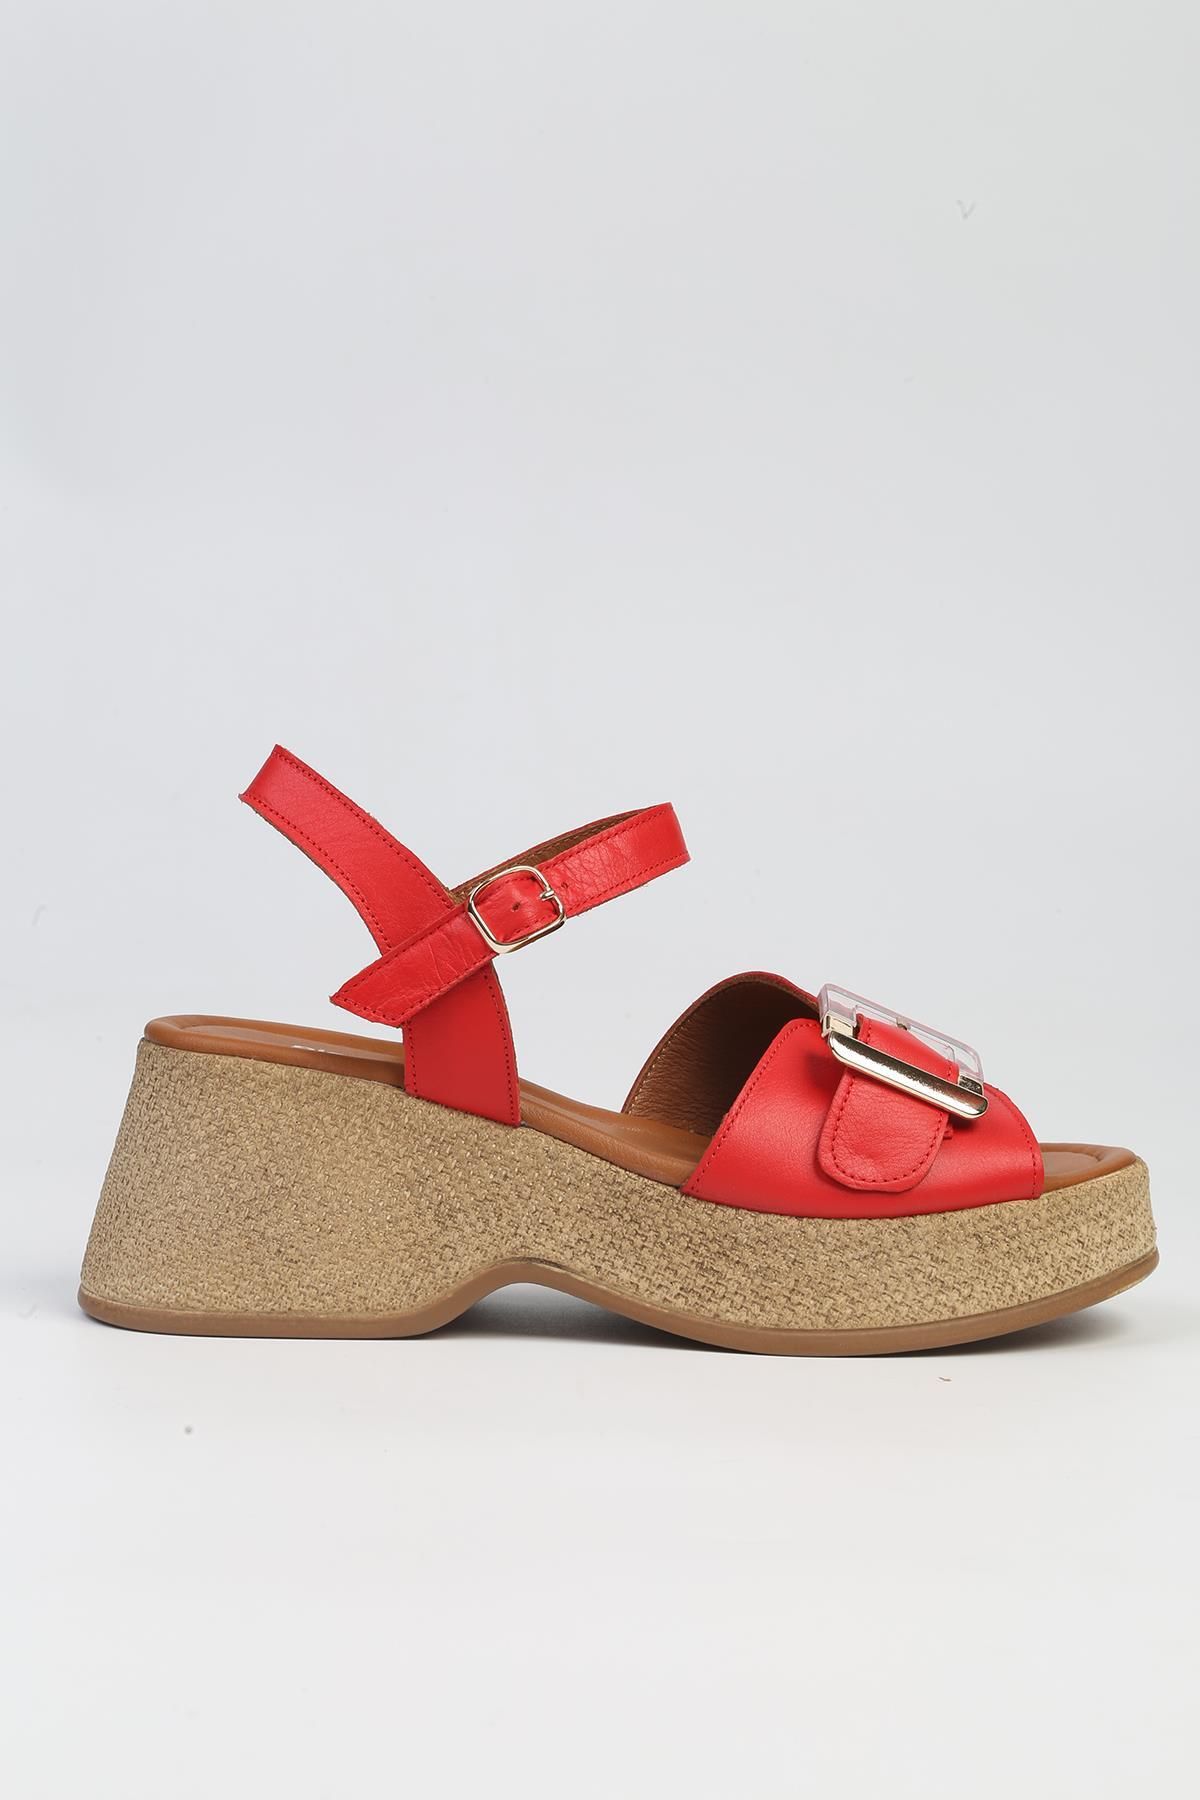 Pierre Cardin ® | PC-7209- 3807 Kirmizi-Kadın Dolgu Topuklu Ayakkabı